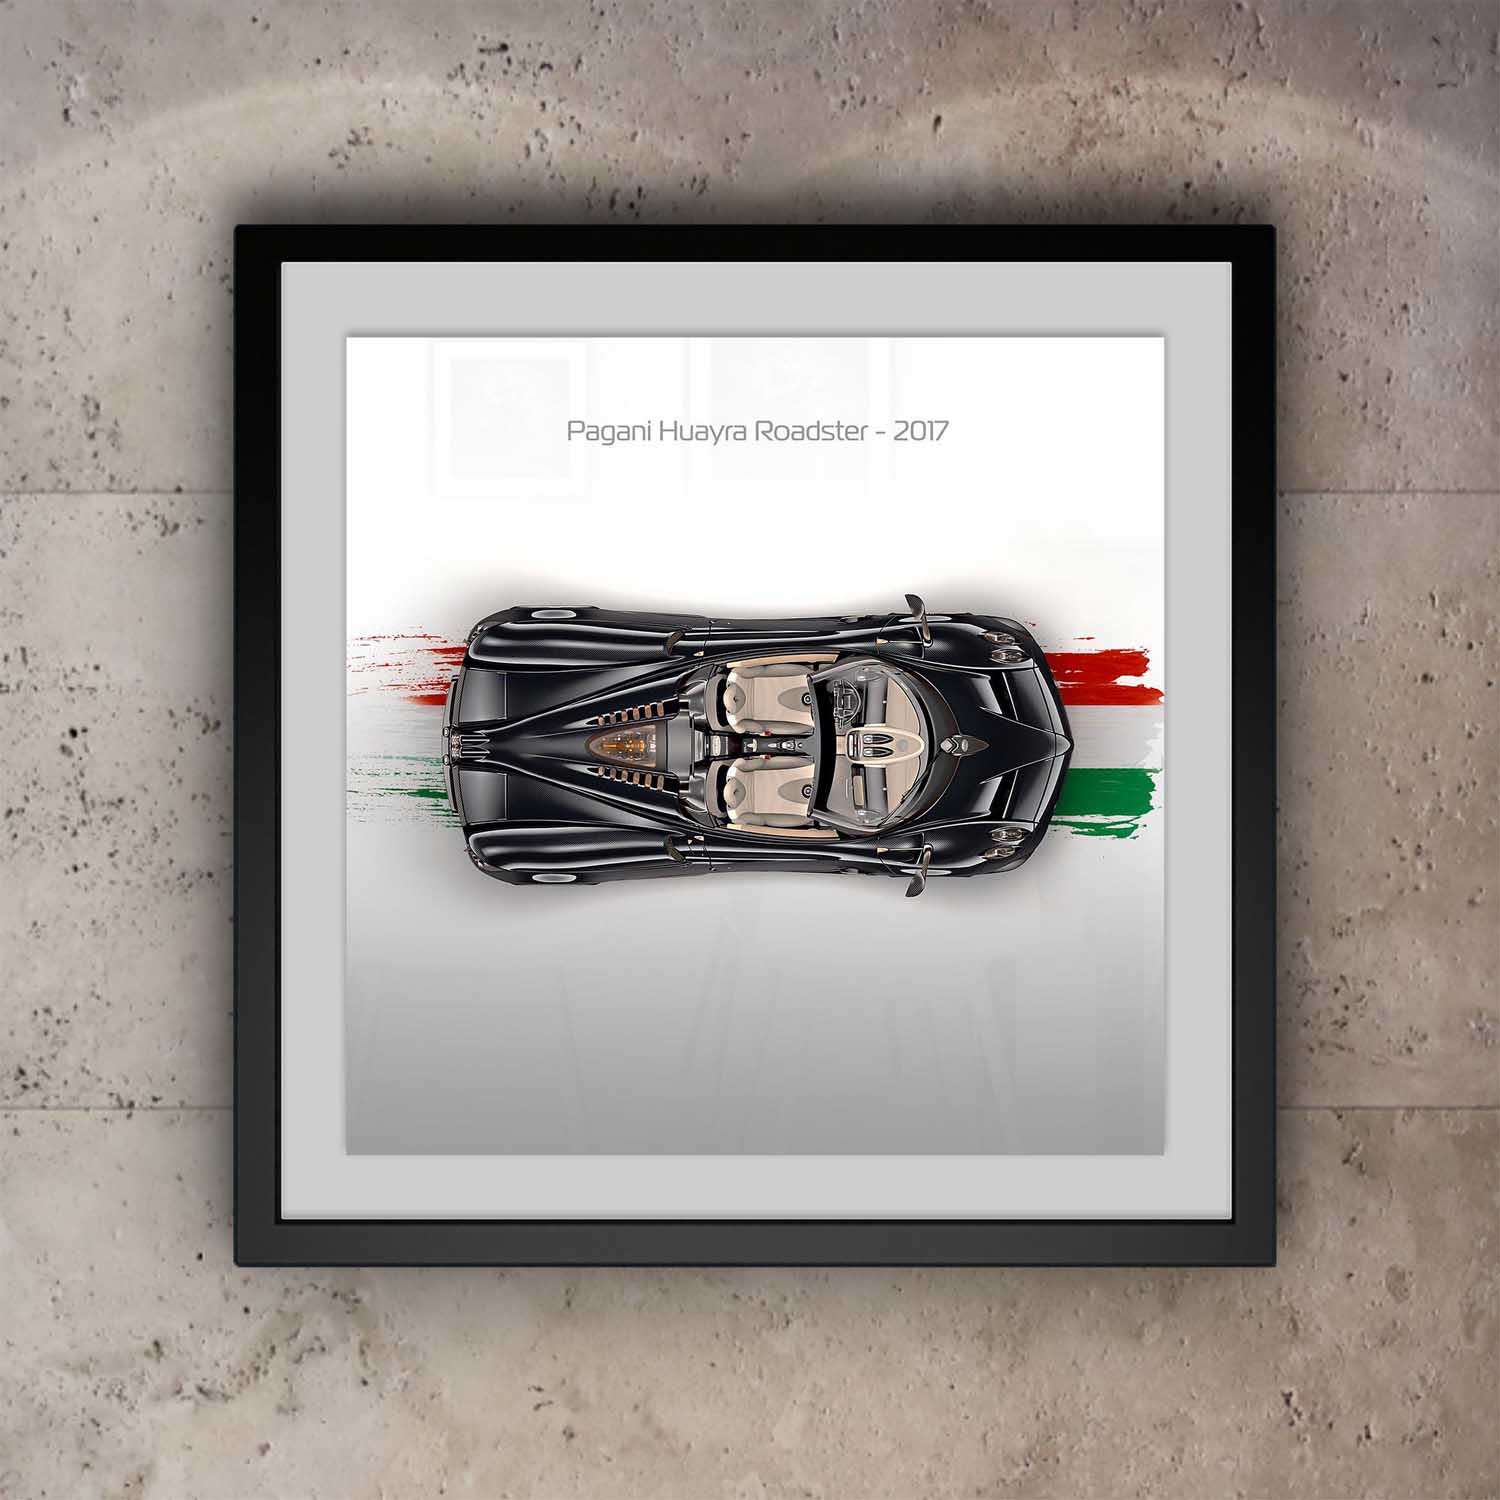 Pagani Huayra Roadster Print - Above